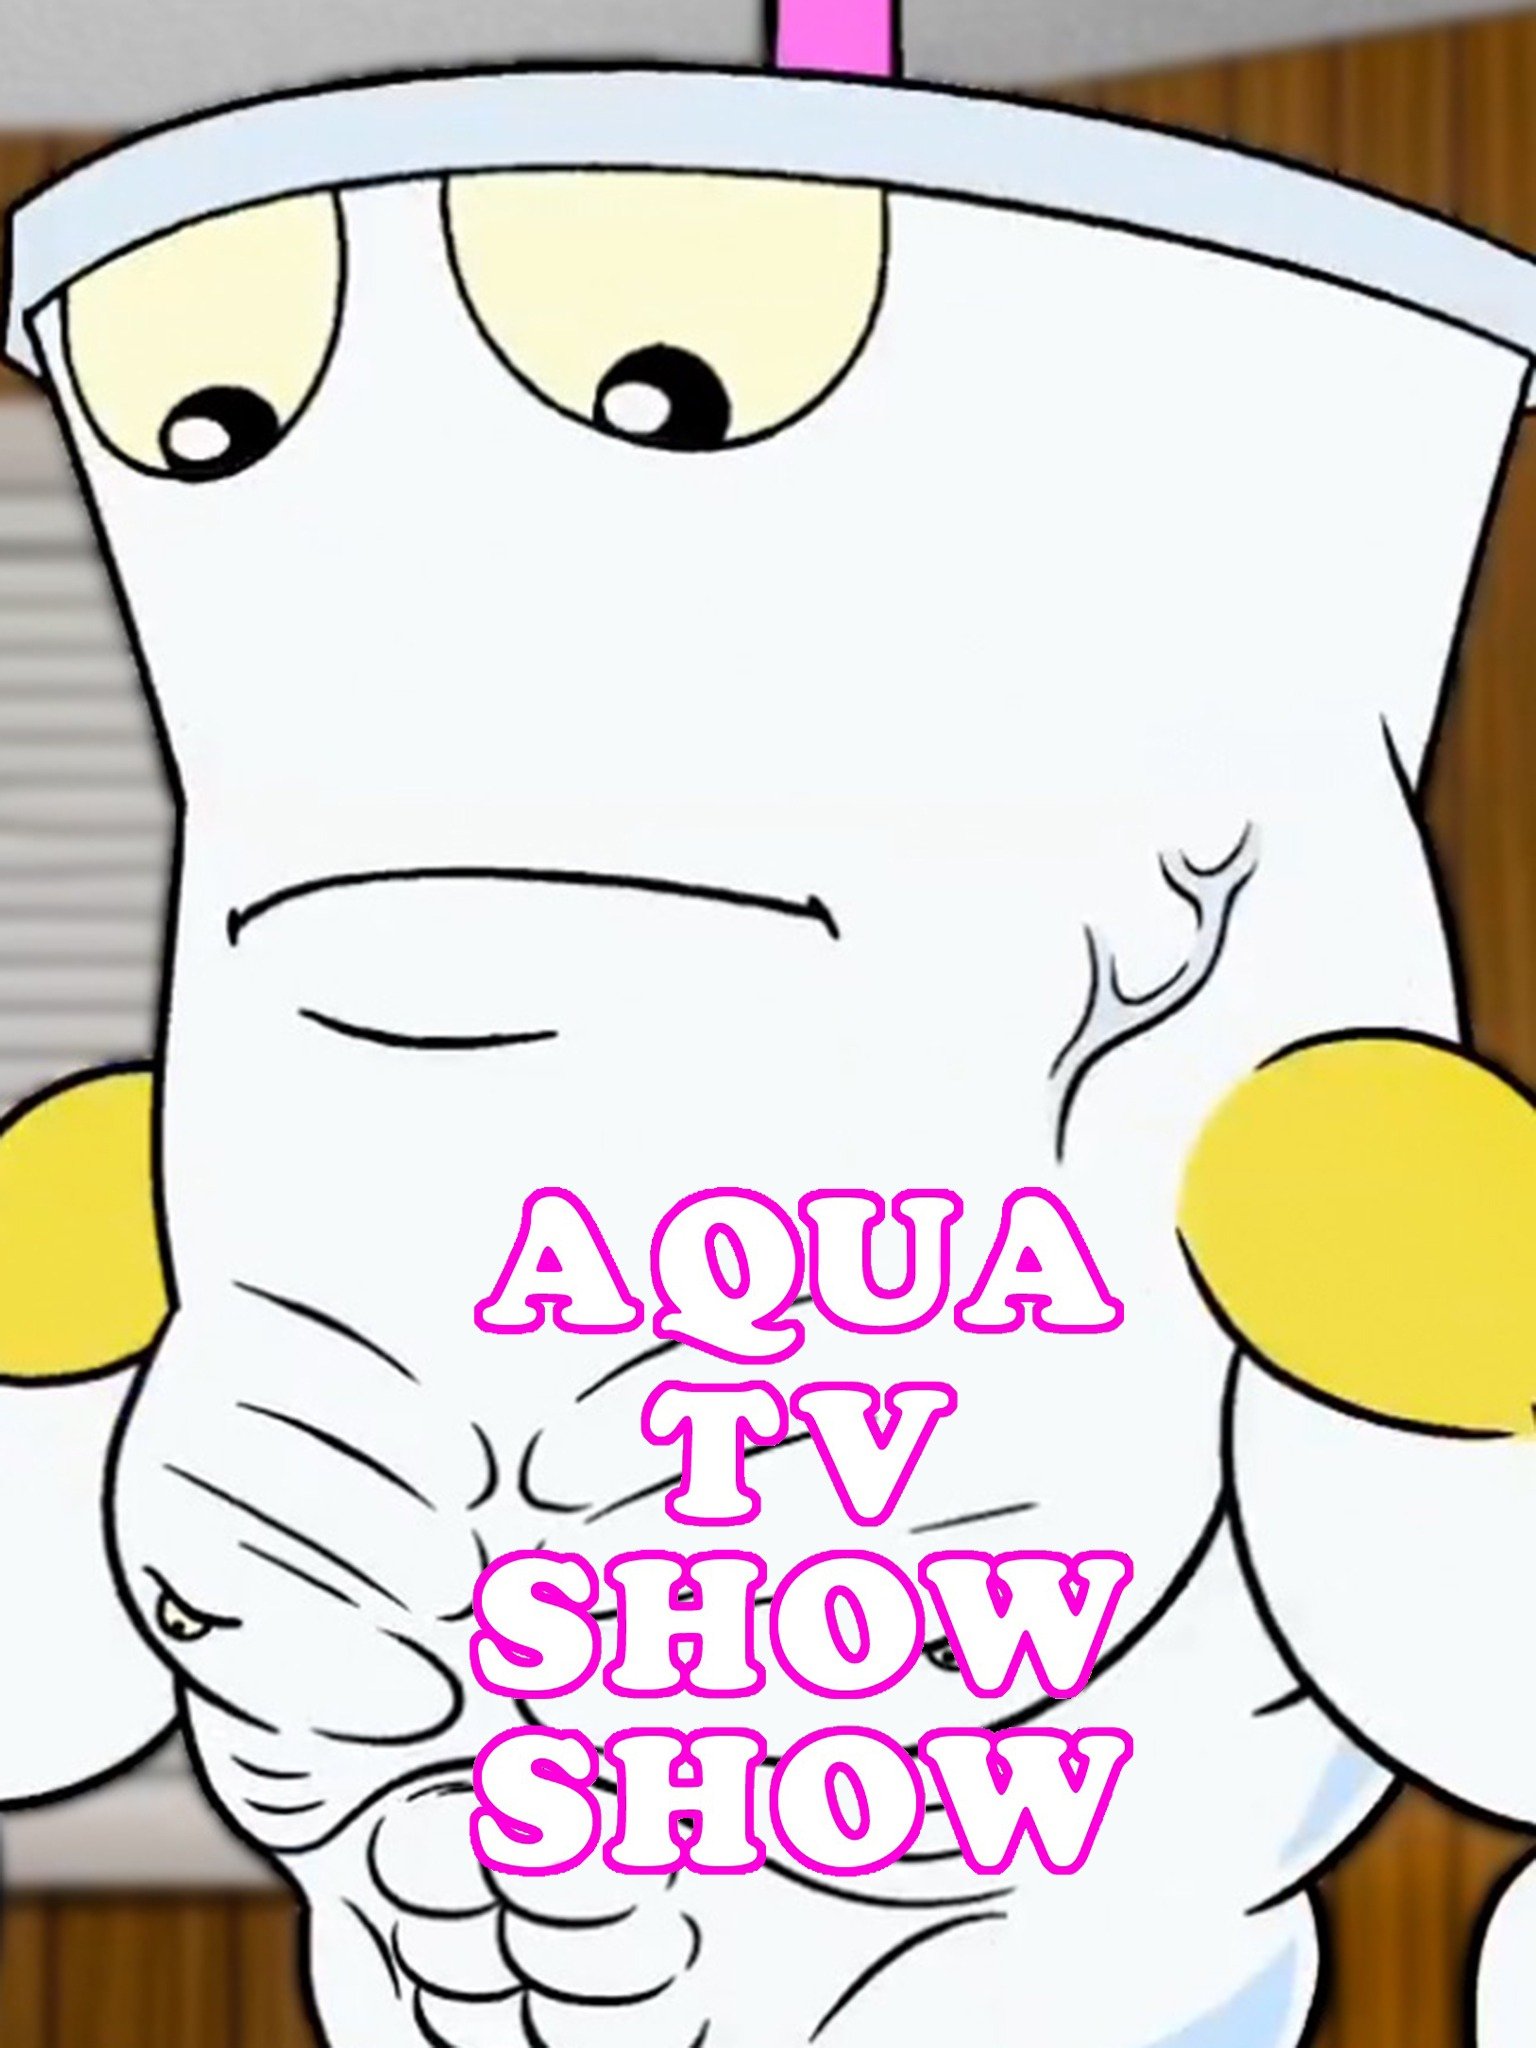 aqua tv